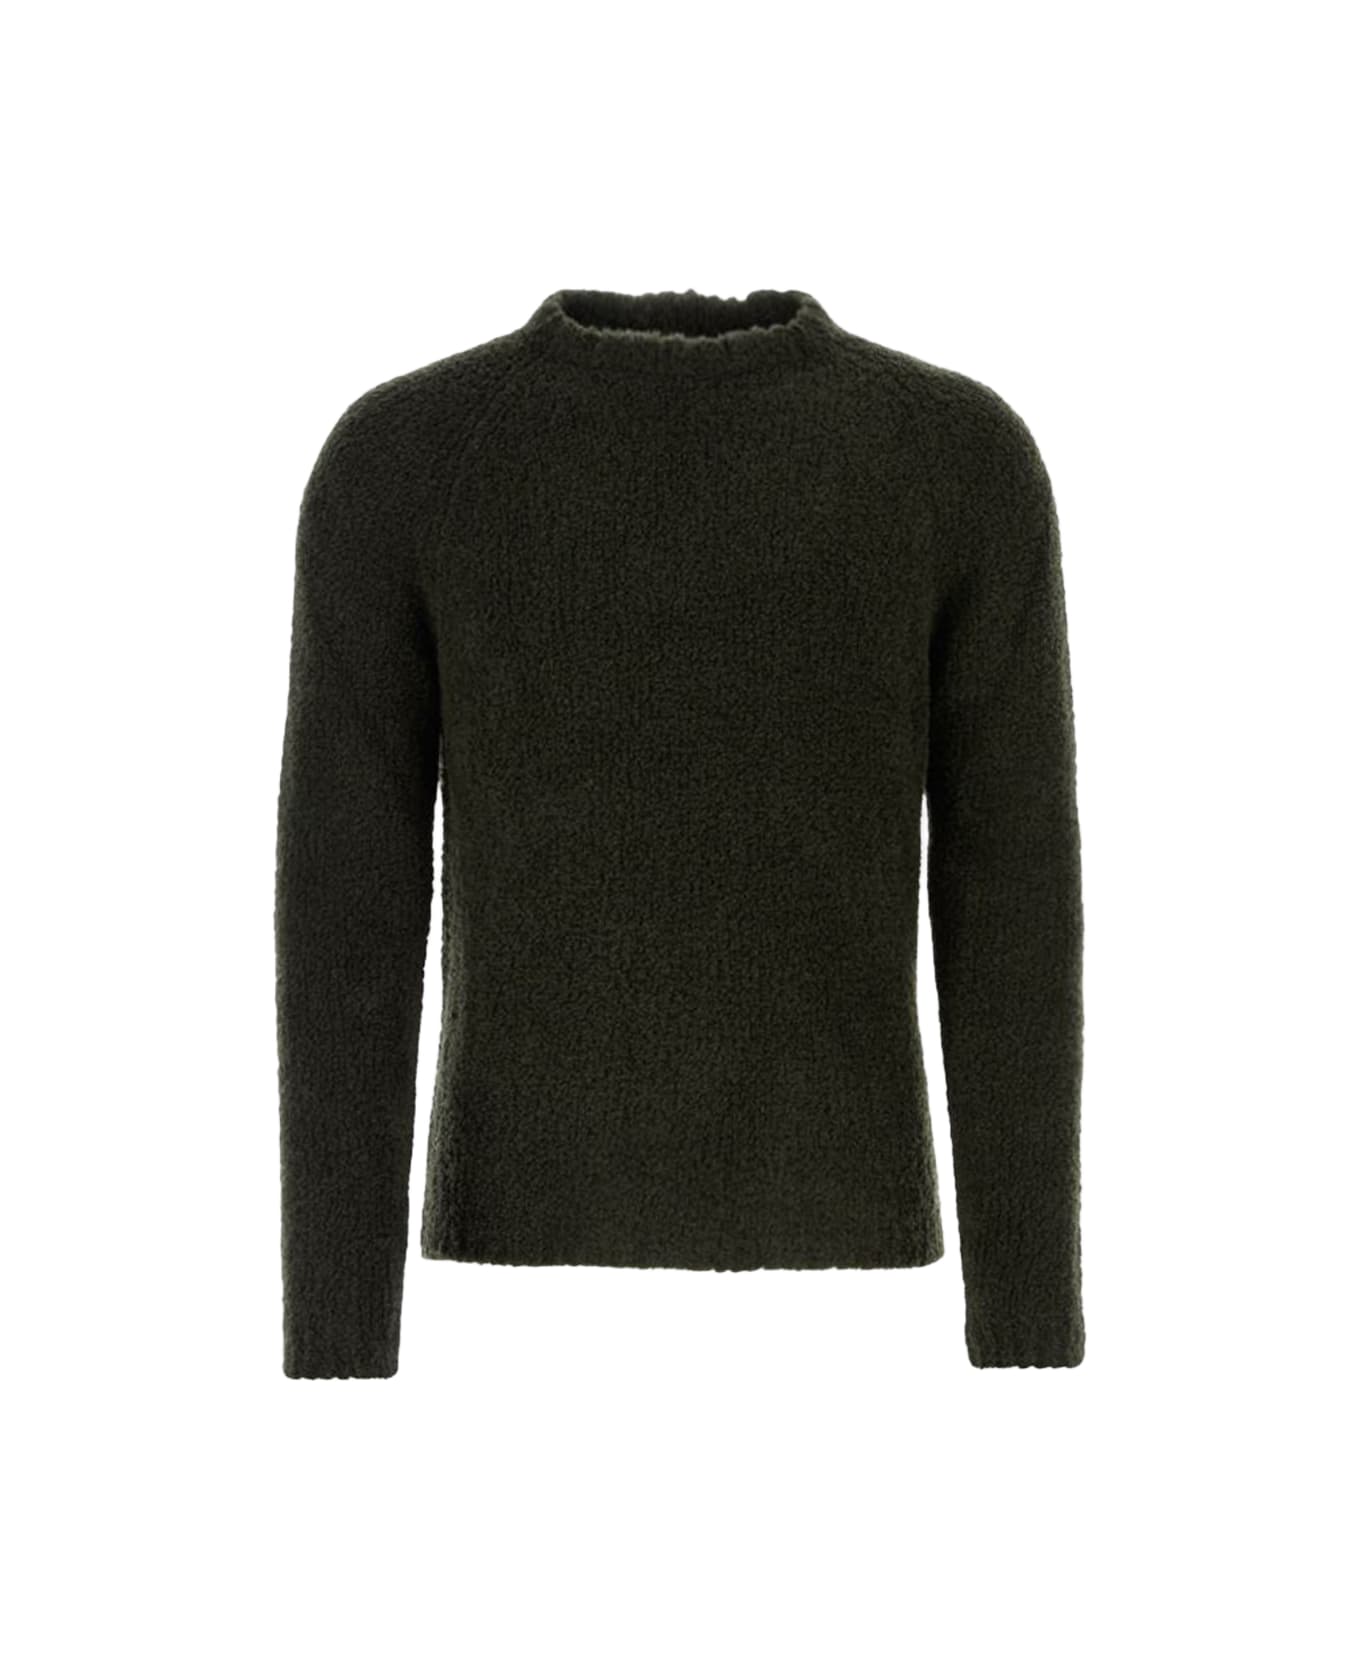 Ten C Dark Green Wool Blend Sweater - Green